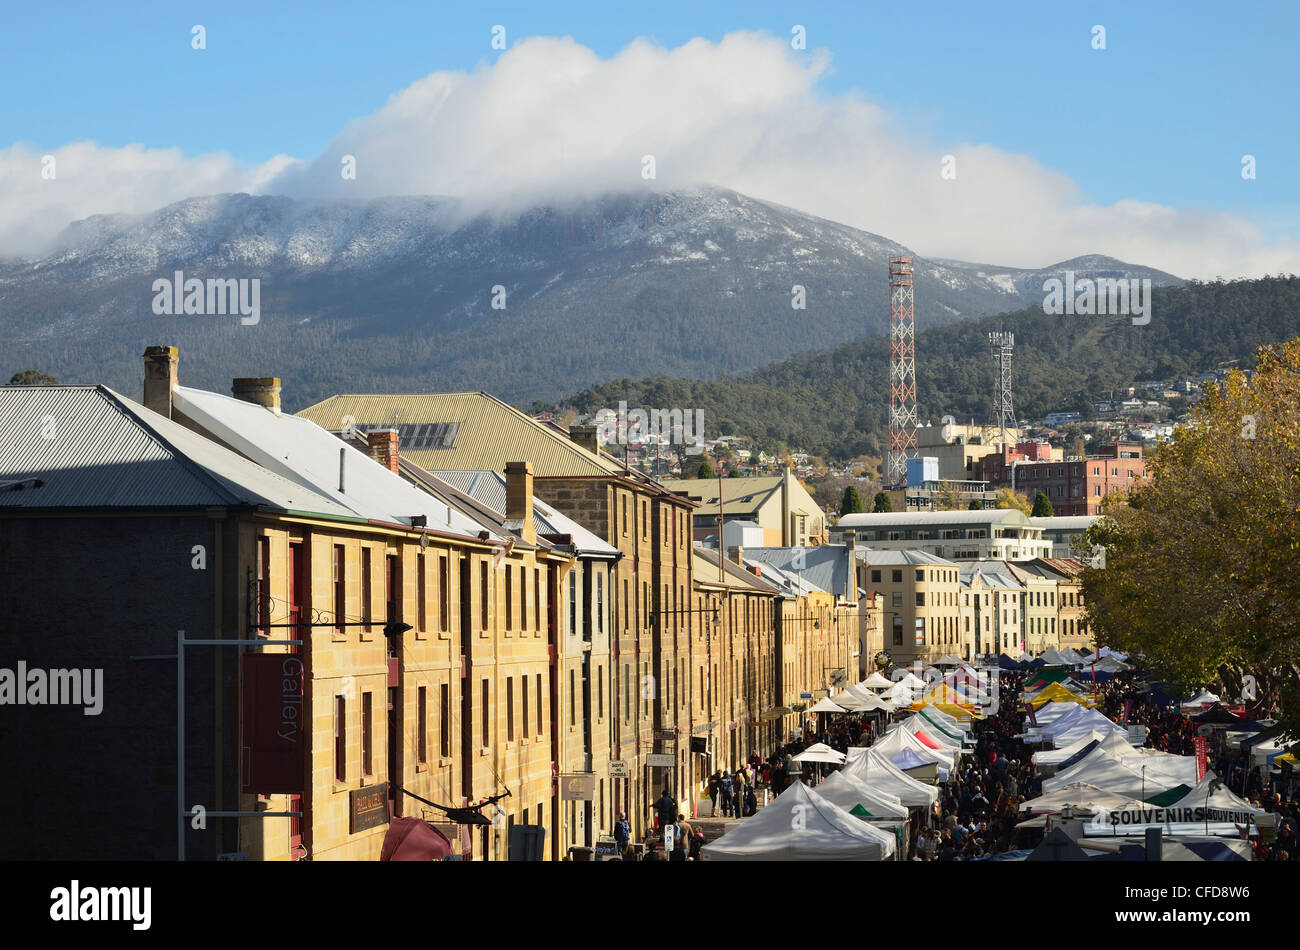 Le marché Salamanca, Hobart, Tasmanie, Australie, Pacifique Banque D'Images